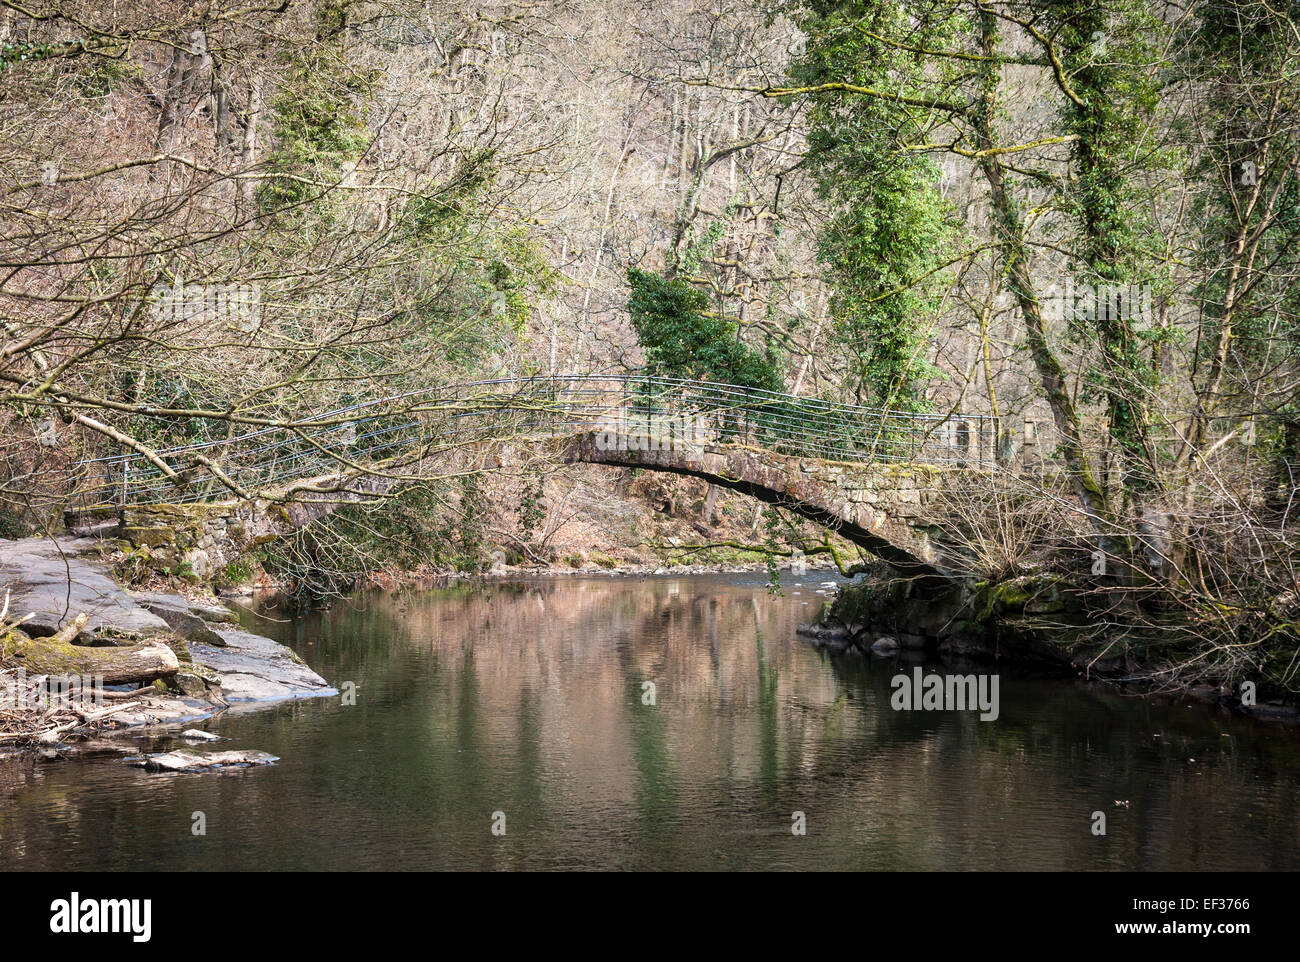 Passerelle au-dessus de la rivière près de Goyt Marple dans Cheshire, Angleterre. Pentes boisées raides derrière. Lierre sur les arbres. Banque D'Images